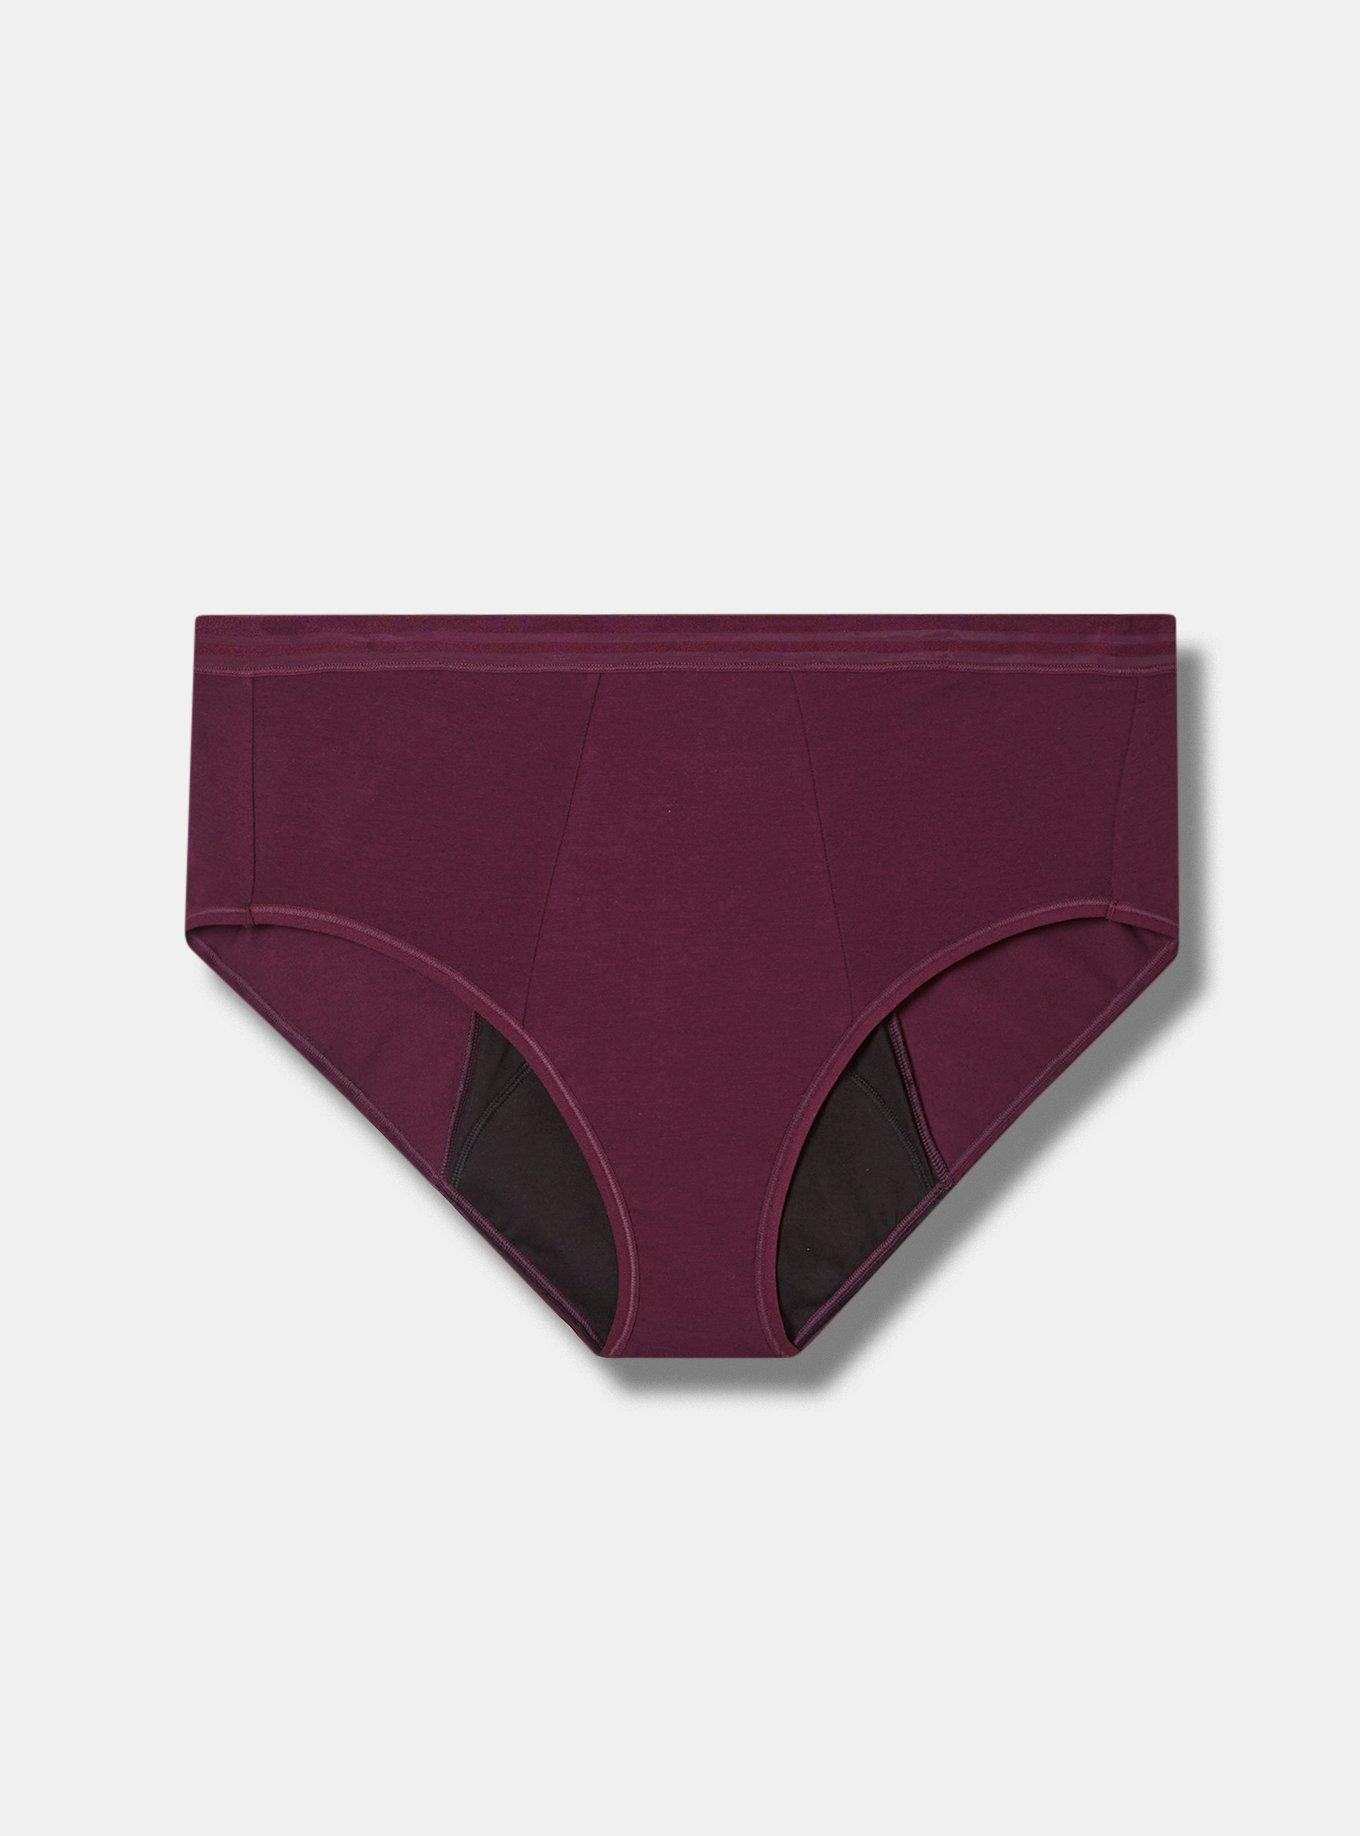 86) Thinx Hiphugger Menstrual Underwear